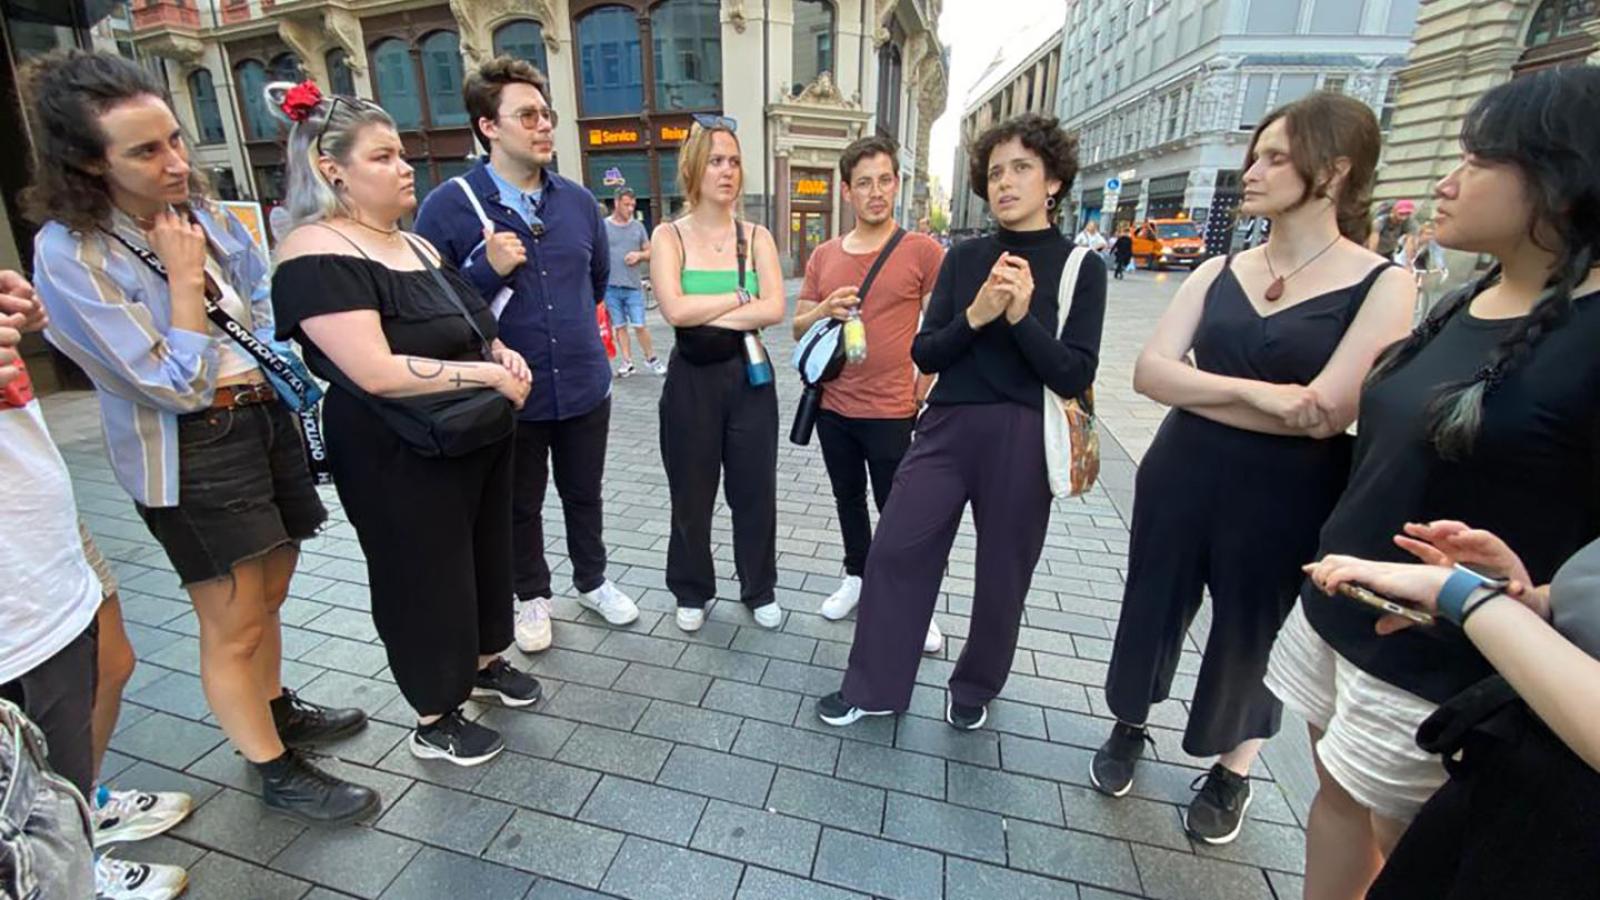 Ungef?hr zehn Menschen stehen in einem Halbkreis auf einem Platz in Leipzig und schauen auf eine Person die Teil des Kreises ist und etwas erz?hlt.